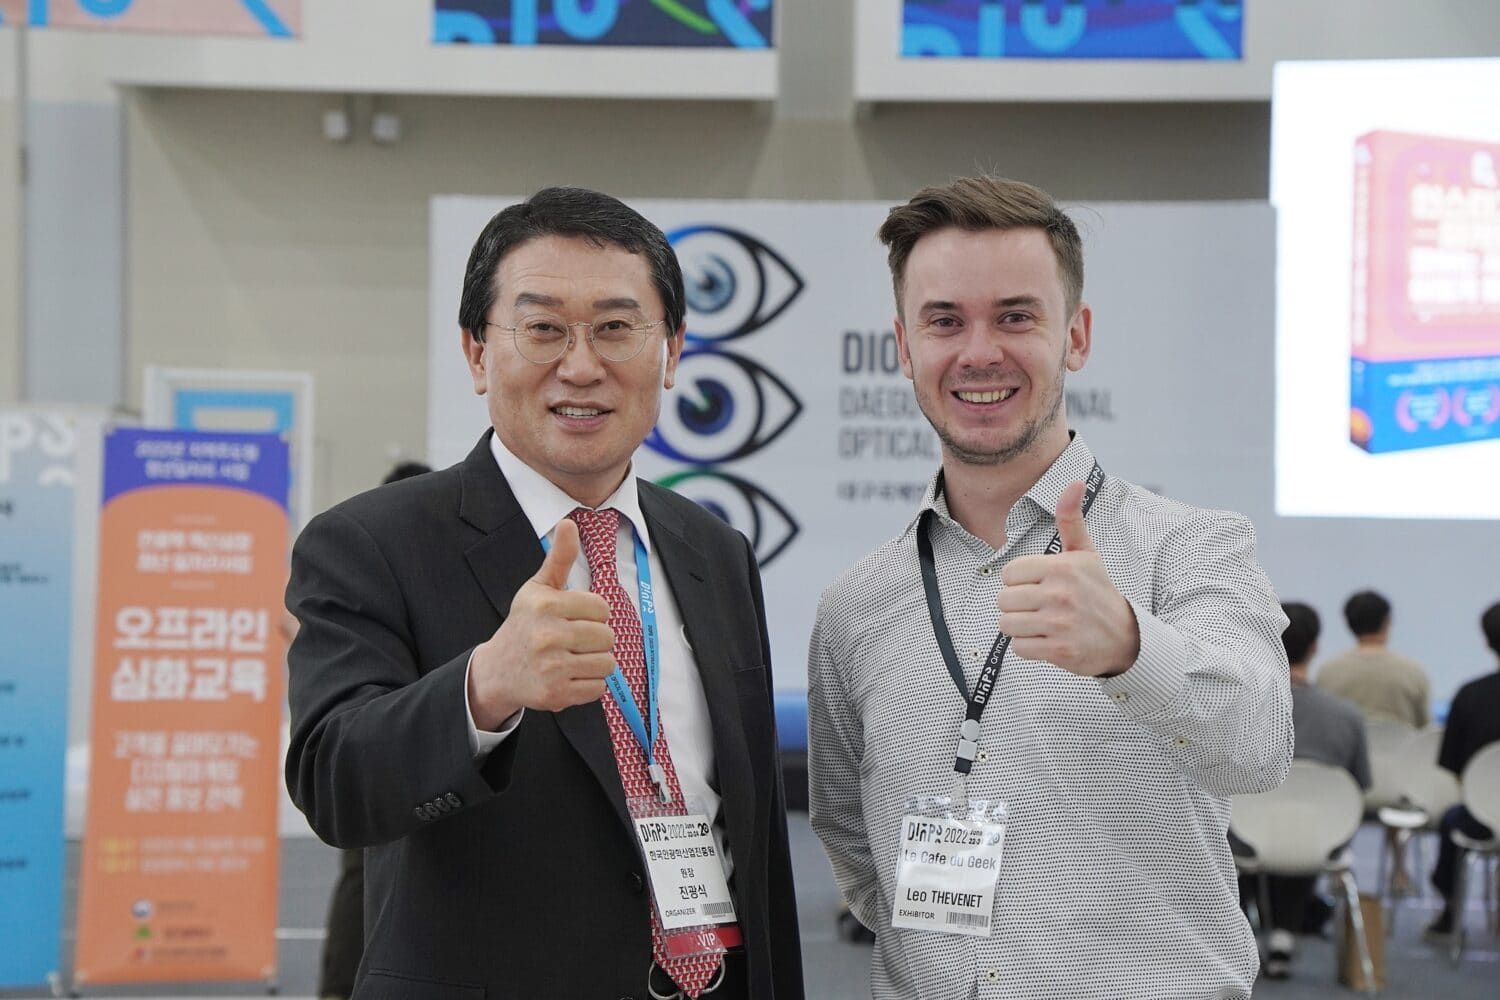 DIOPS 2022 – L’industrie de la lunetterie Coréenne pour l’avenir du métaverse-AR ! DIOPS